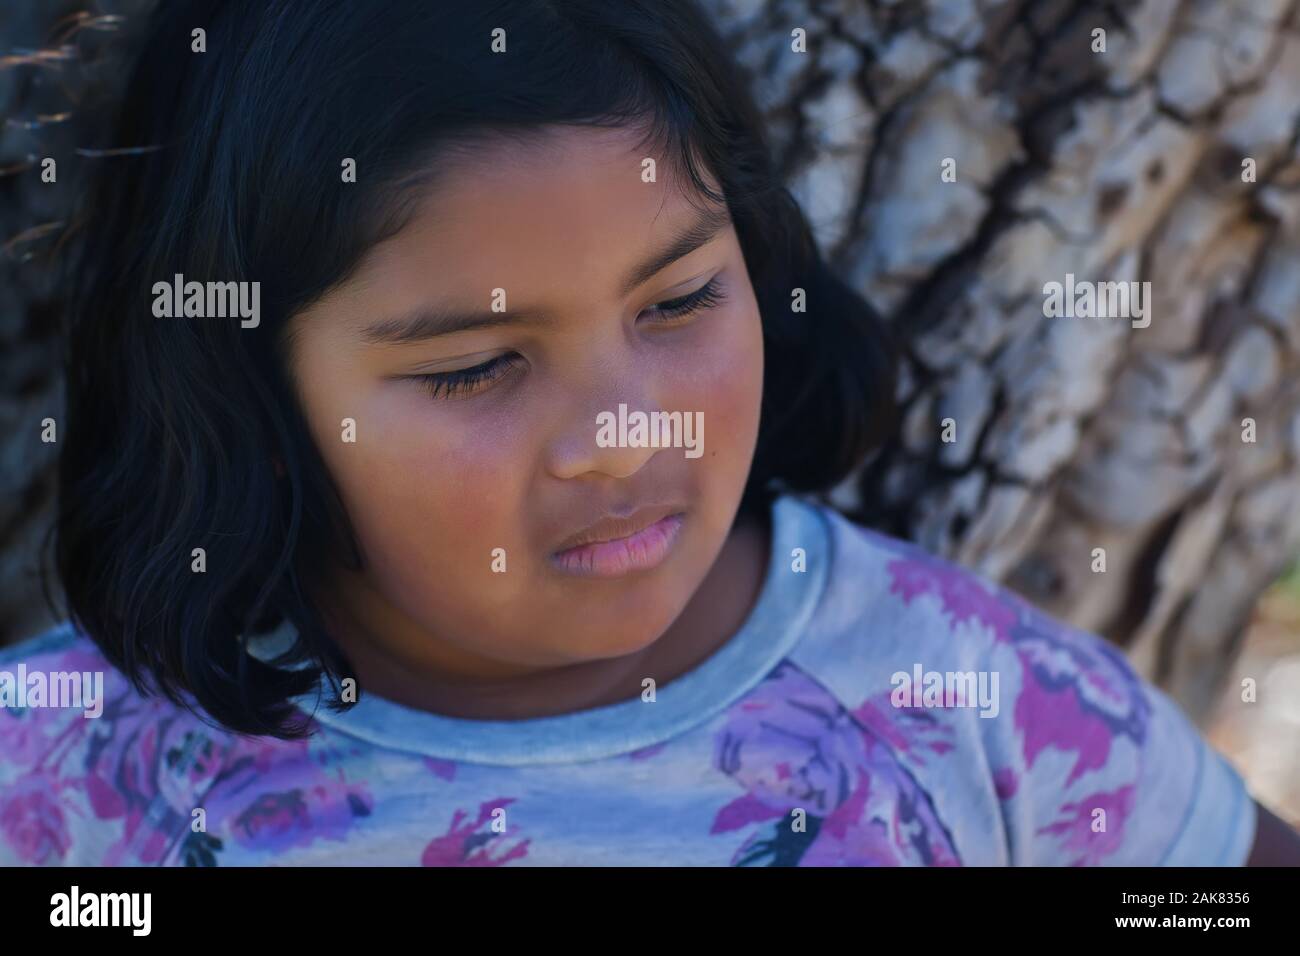 Der Gesichtsausdruck von einem jungen Mädchen, traurig, verärgert oder schikaniert. Stockfoto